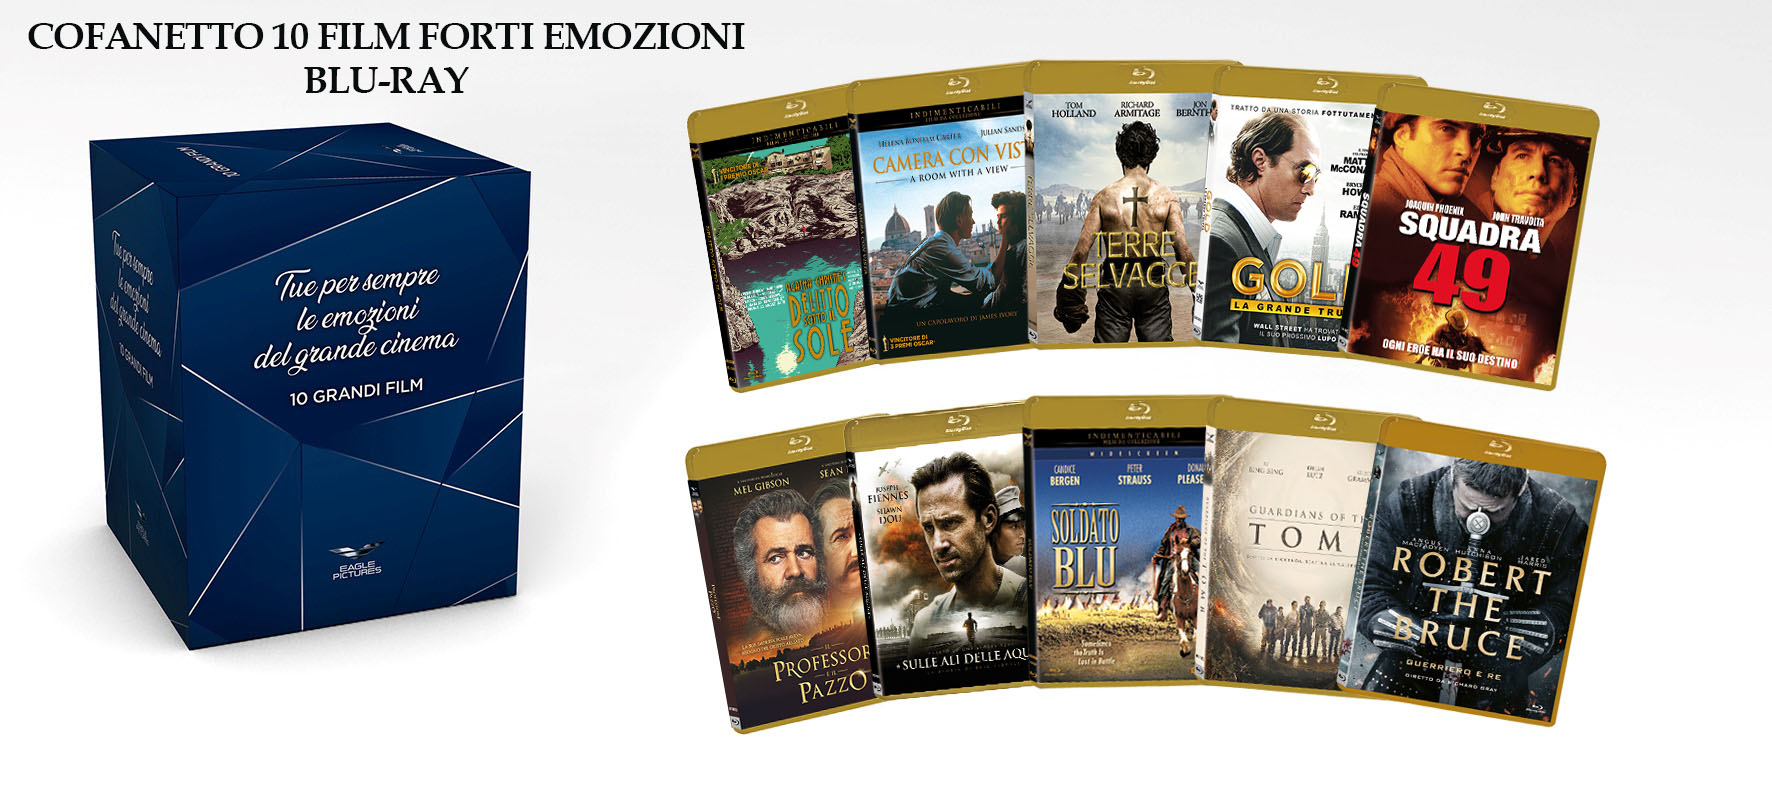 Blu-Ray Forti Emozioni Cofanetto (10 Blu-Ray) NUOVO SIGILLATO, EDIZIONE DEL 28/10/2021 SUBITO DISPONIBILE